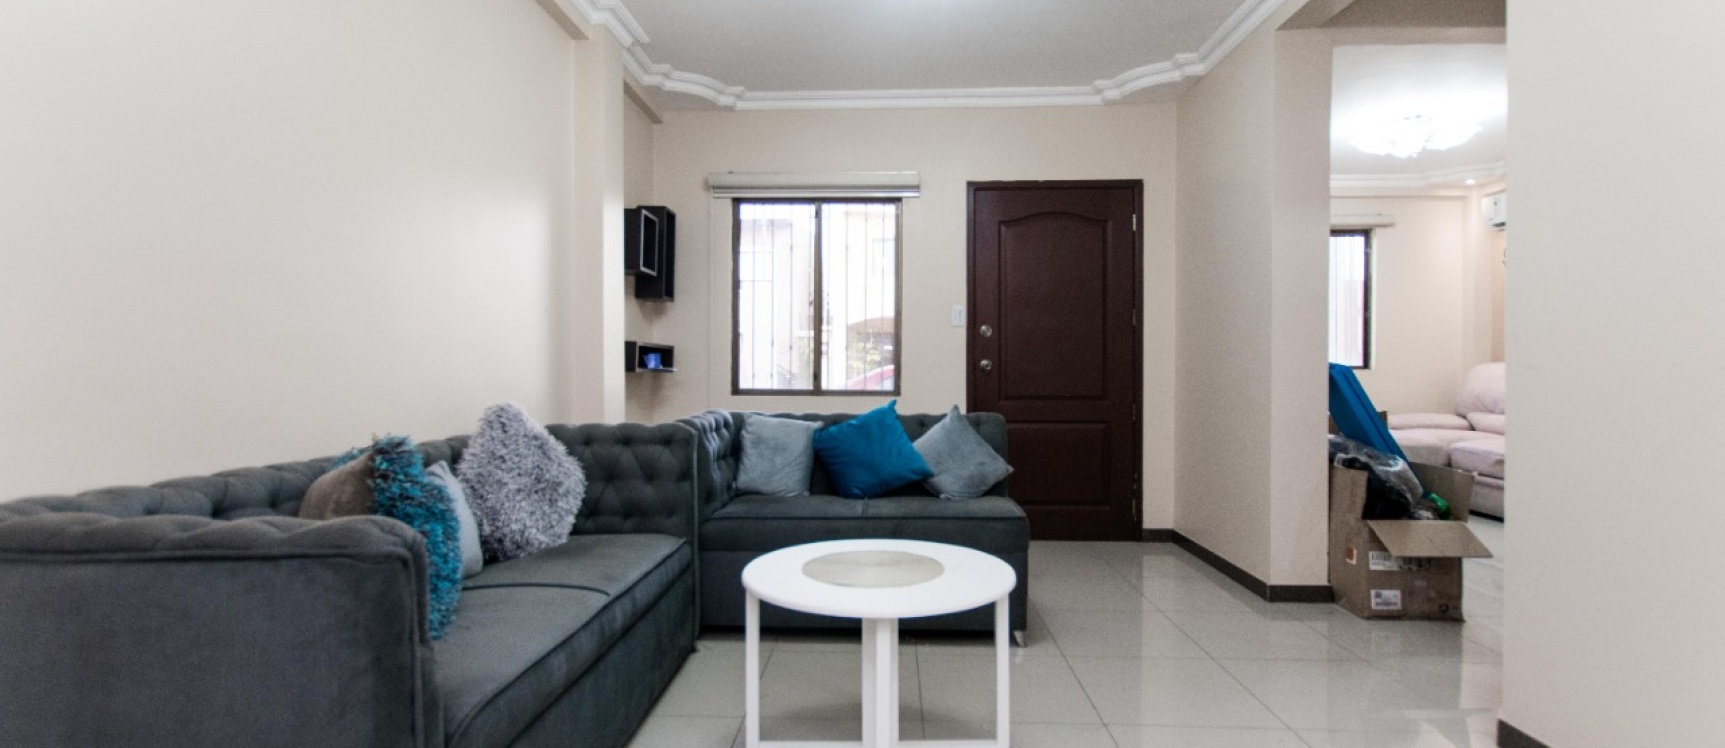 GeoBienes - Casa de tres dormitorios en venta ubicada en la Urbanización La Joya - Plusvalia Guayaquil Casas de venta y alquiler Inmobiliaria Ecuador